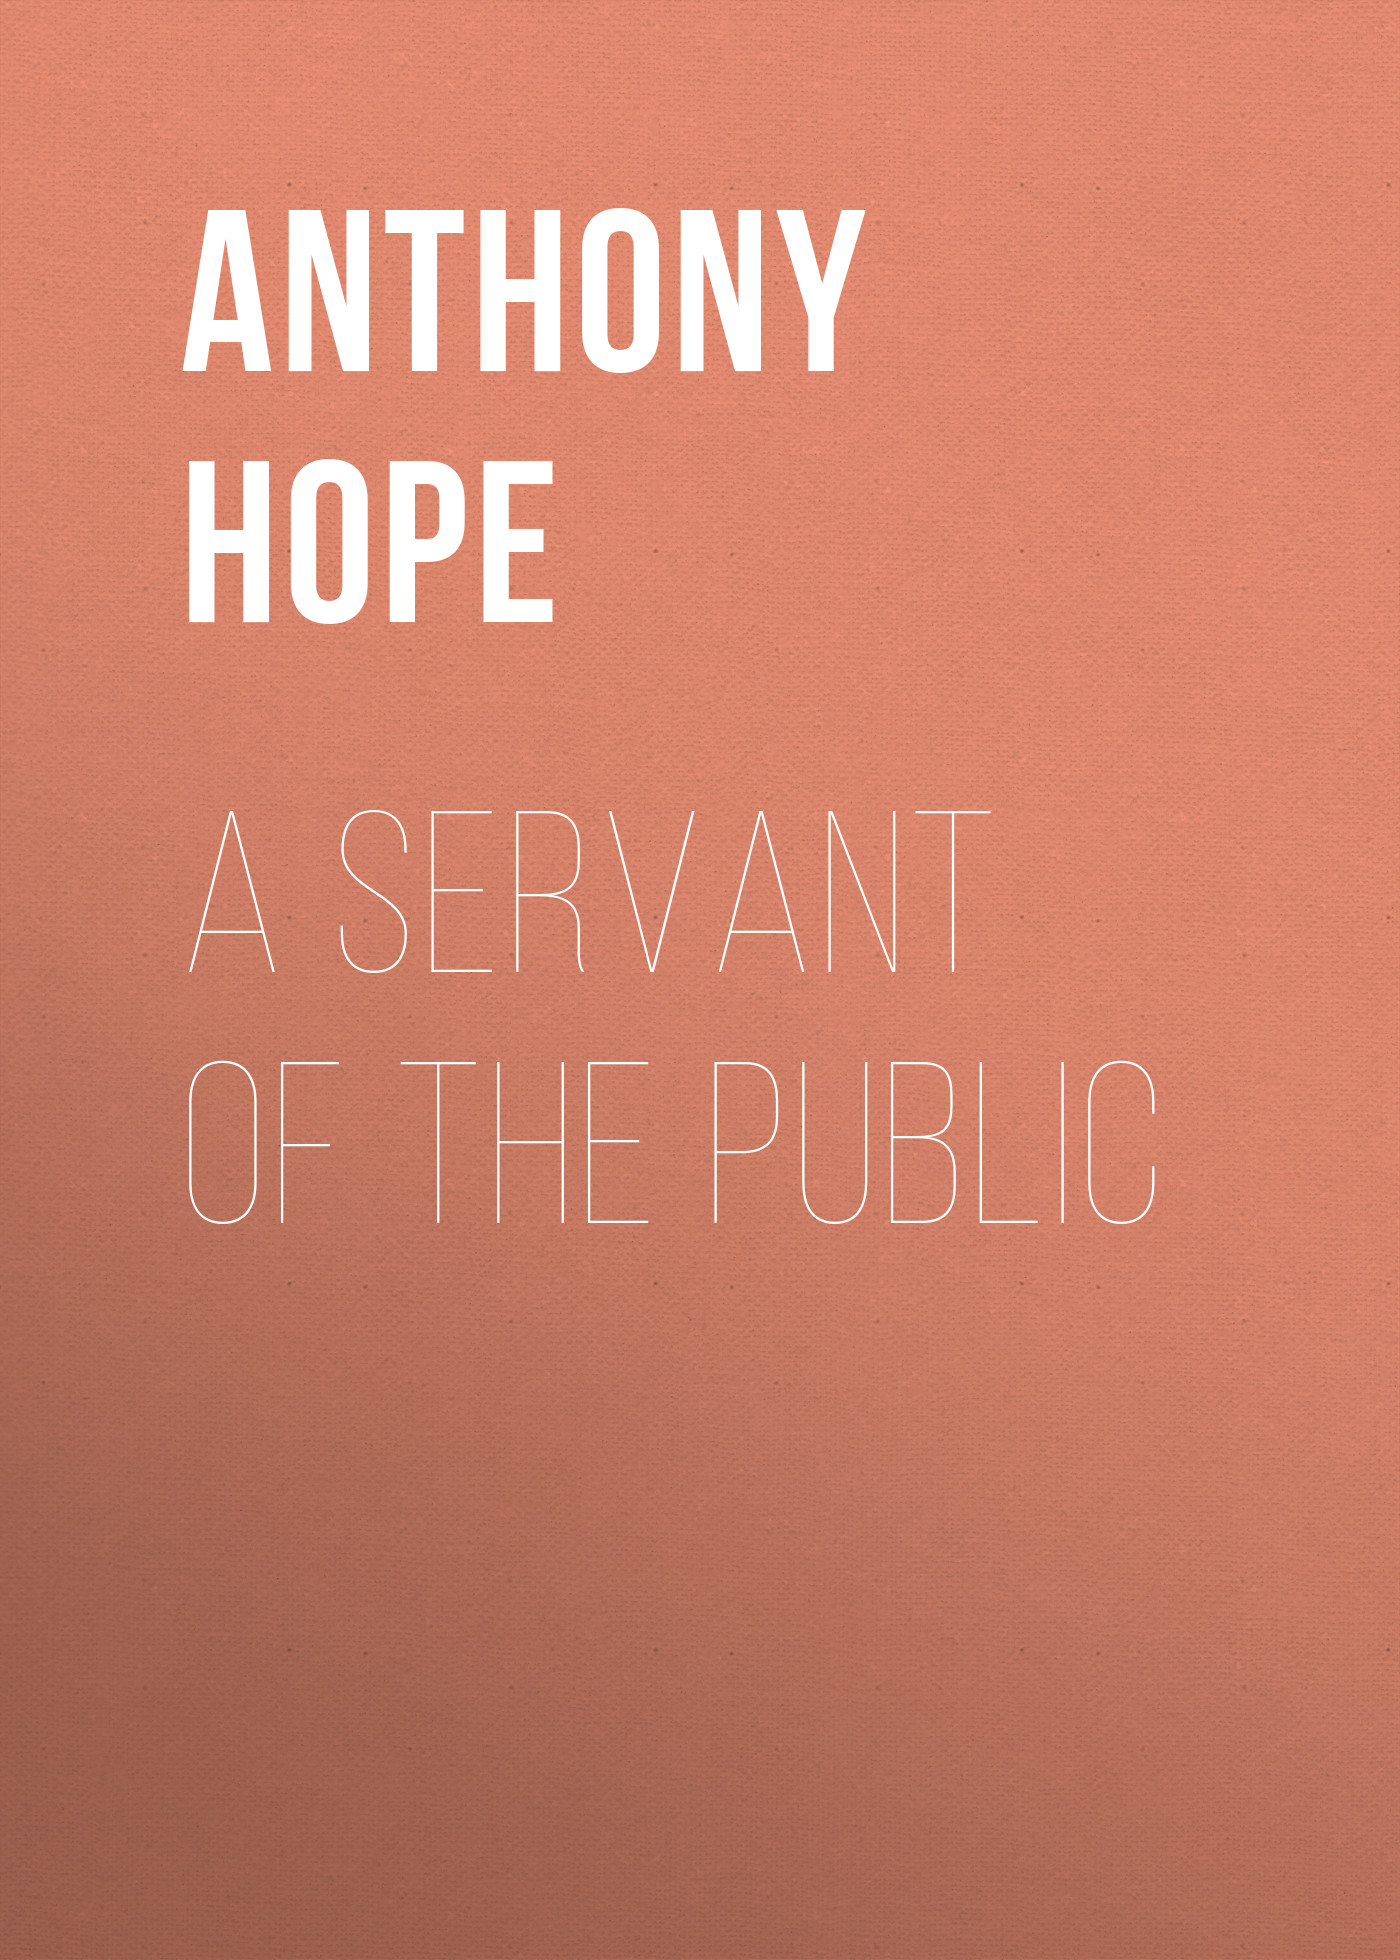 Книга A Servant of the Public из серии , созданная Anthony Hope, может относится к жанру Зарубежная классика. Стоимость электронной книги A Servant of the Public с идентификатором 23147499 составляет 5.99 руб.